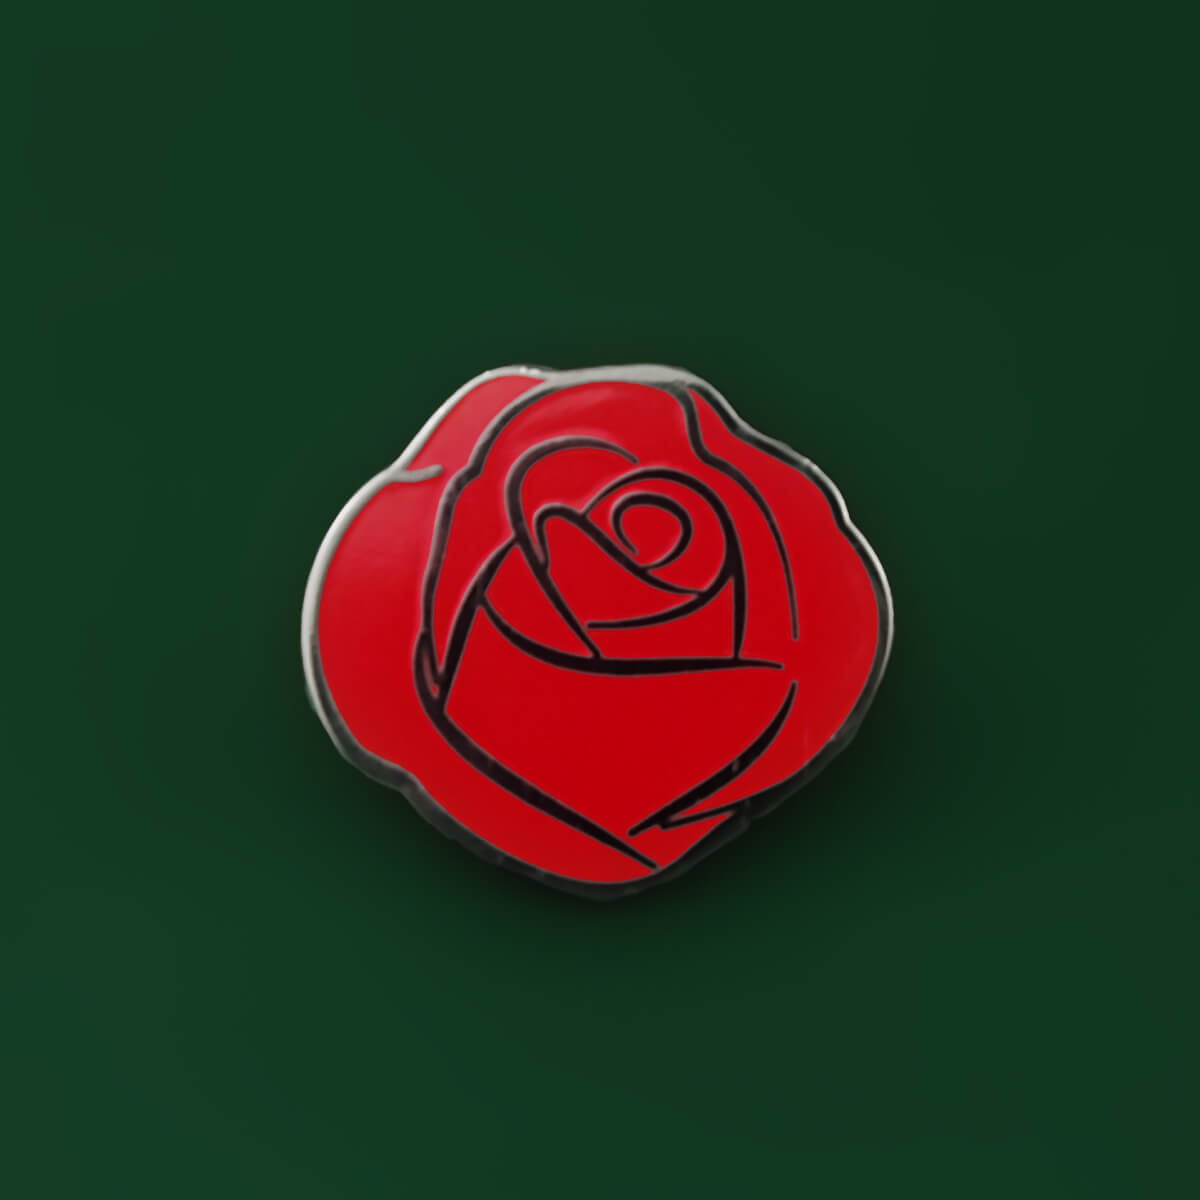 RED ROSE ENAMEL PIN - PACK OF 5